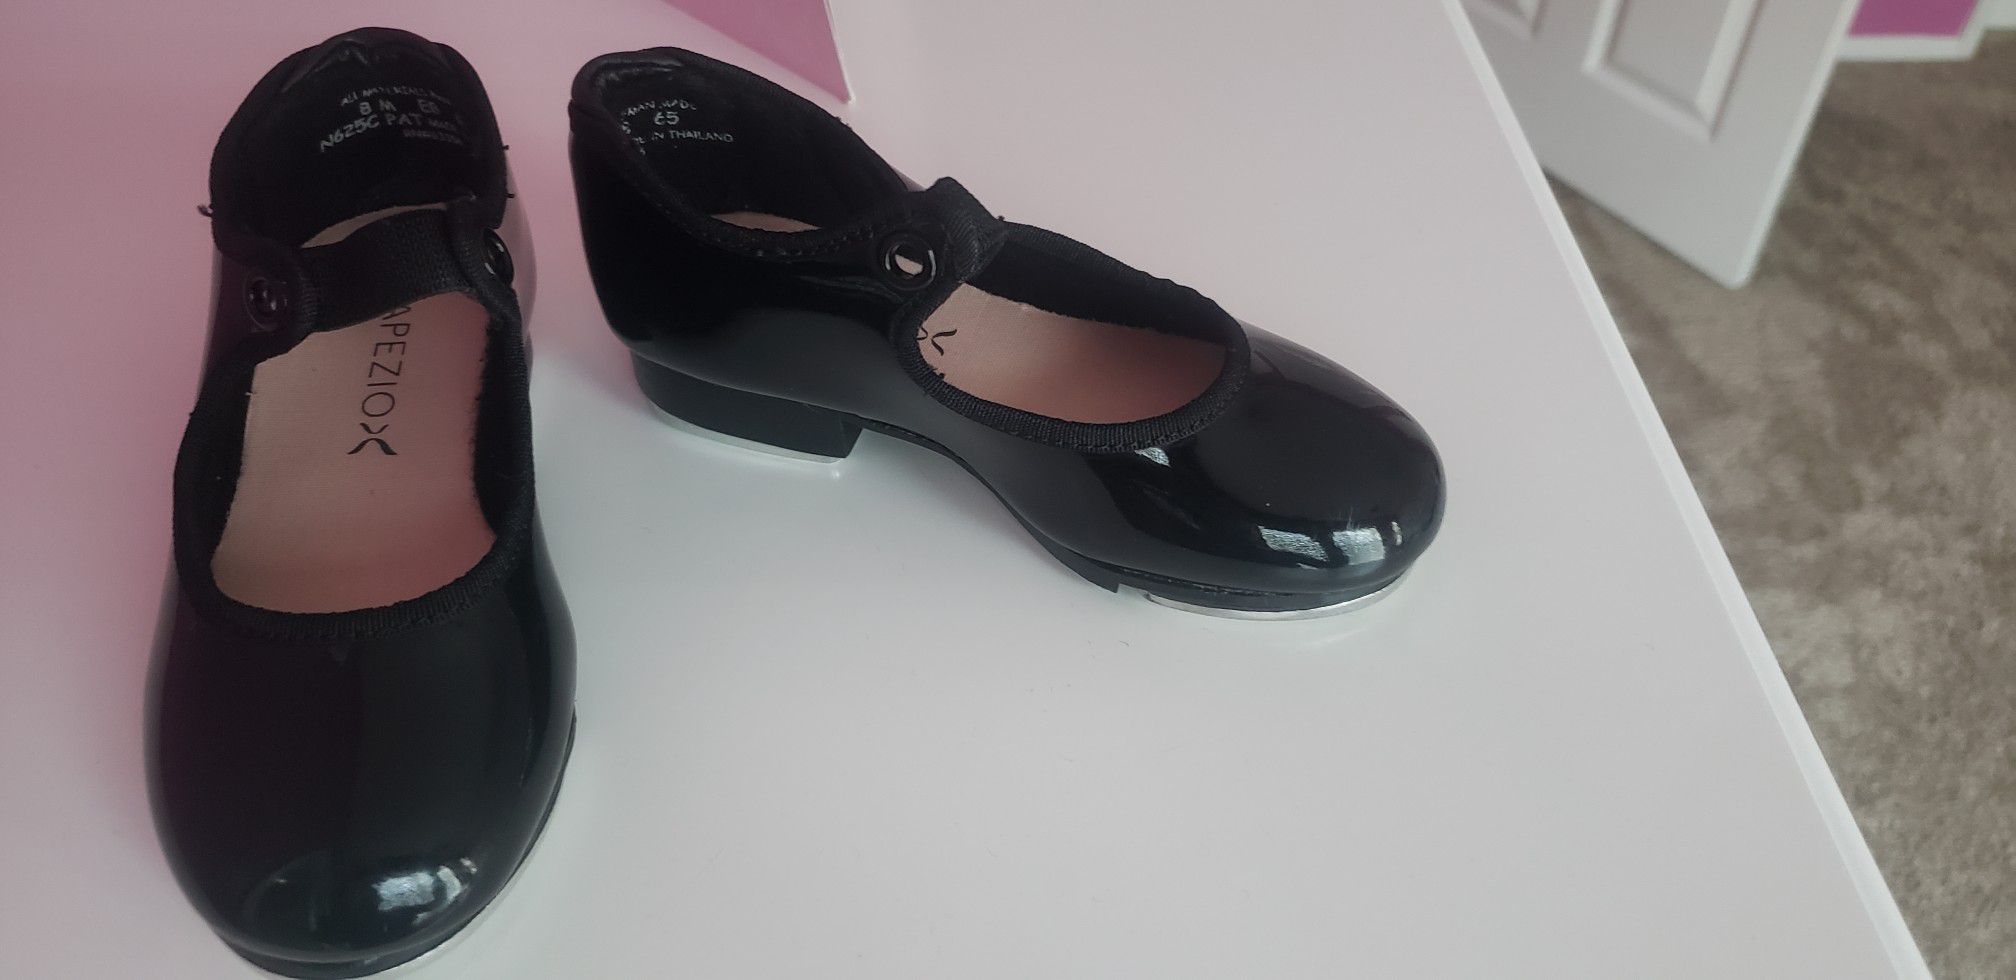 Capezio - Tap shoes (size 8 little girls)